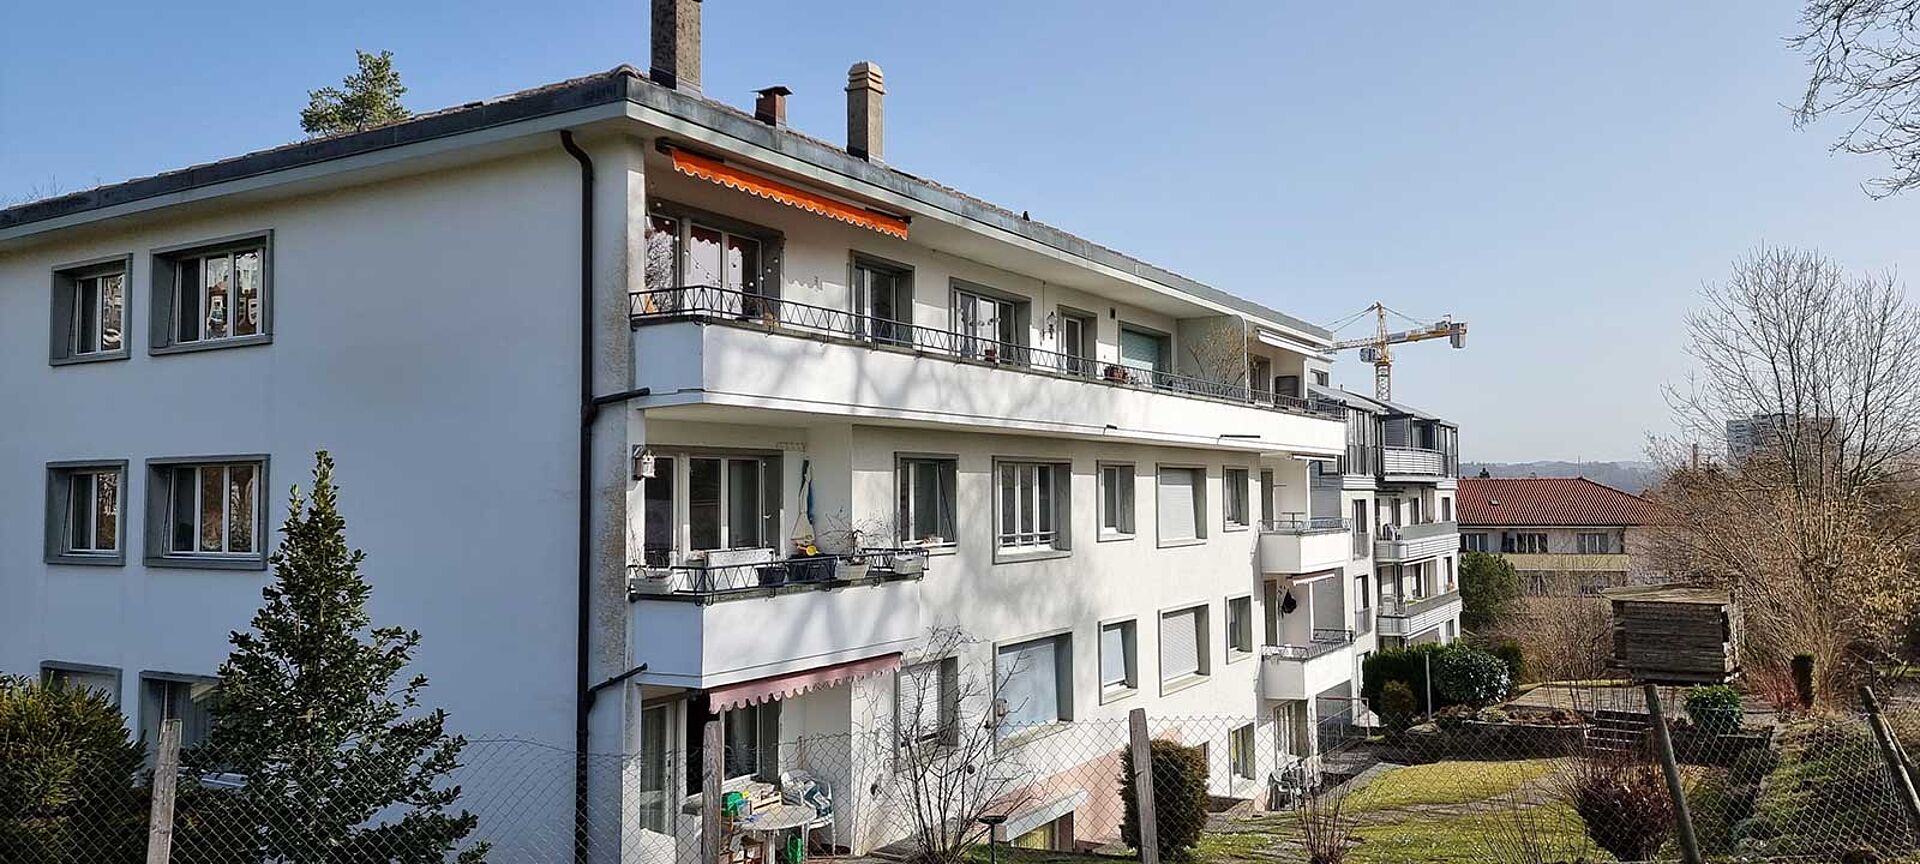 Vendu - Fribourg - Appartement de 4,5 pièces à rénover partiellement